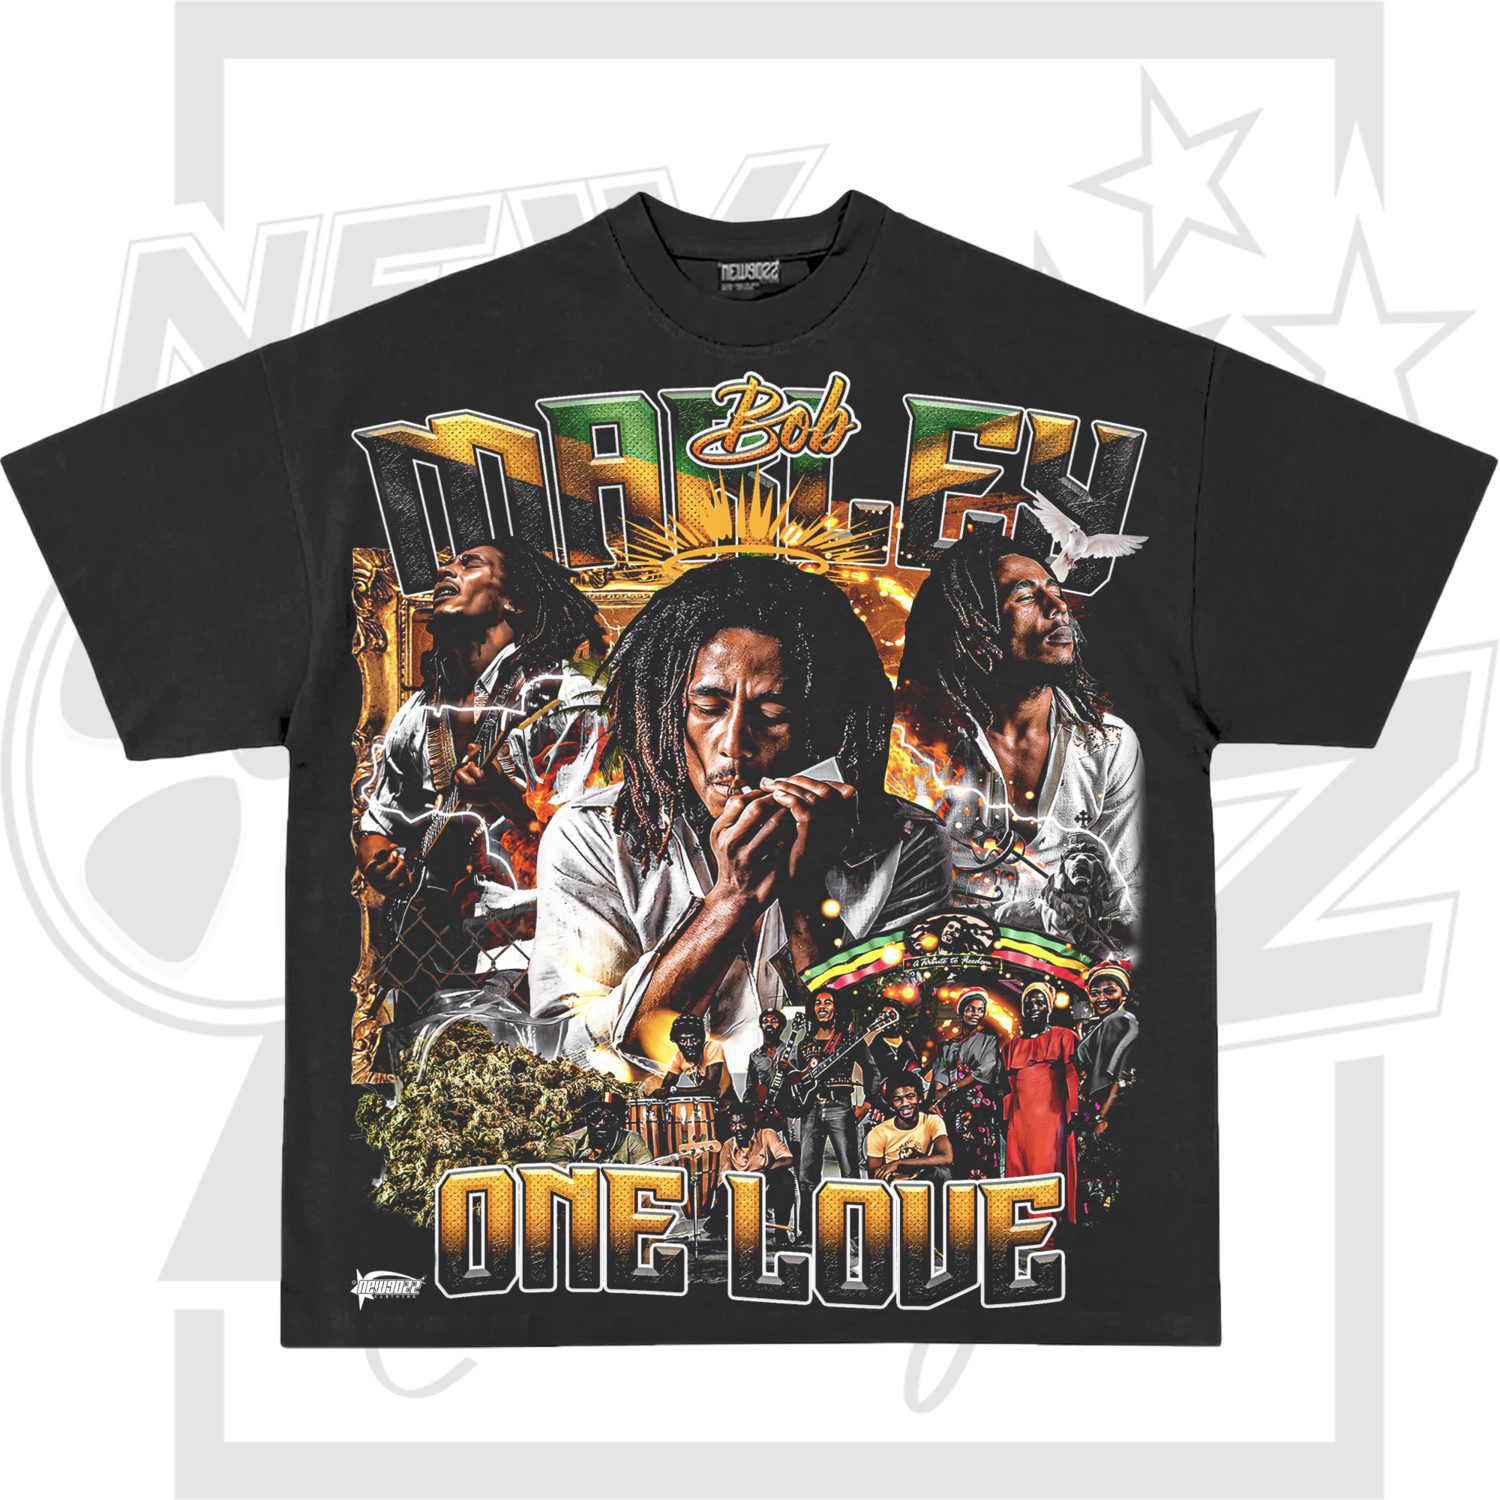 Bob Marley (4xl-5xl)